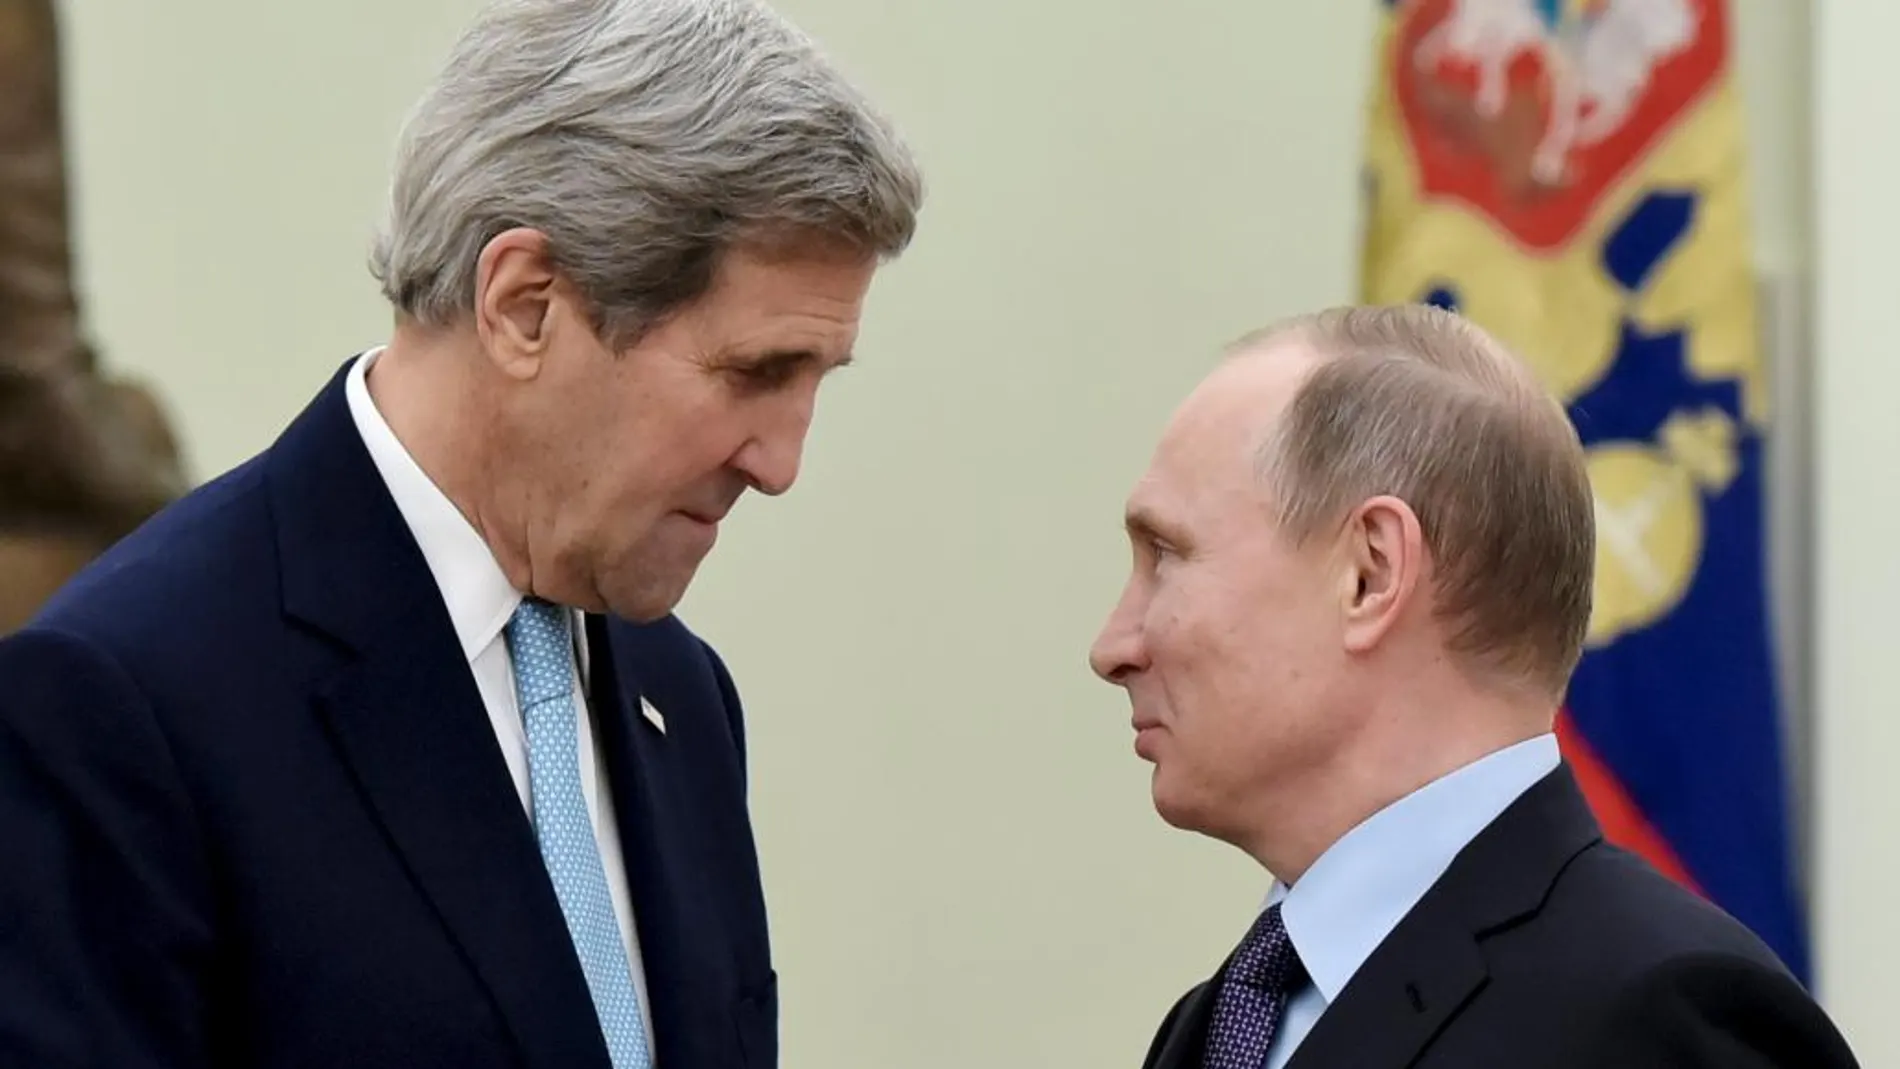 John Kerry y Vladimir Putin al comienxo de la reunión en el Kremlin